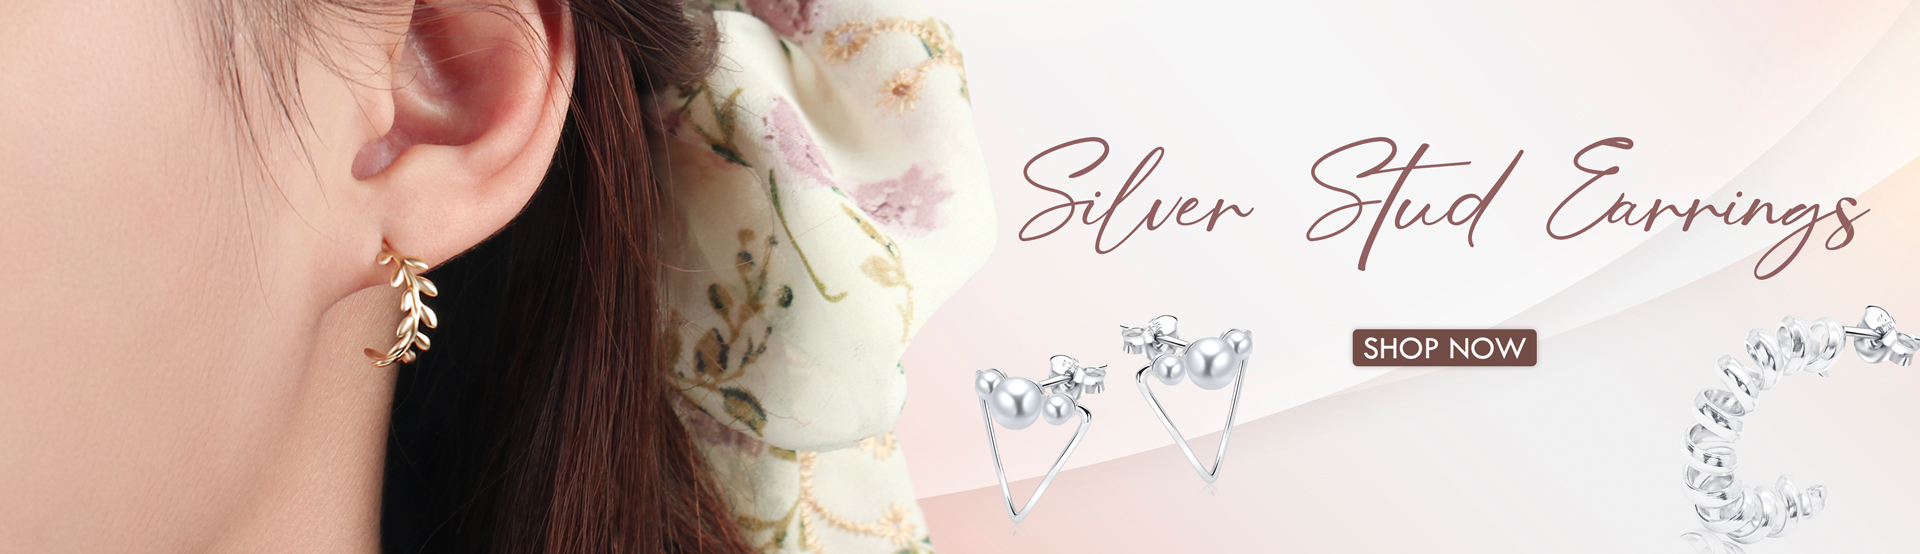 Silver-Stud-Earrings